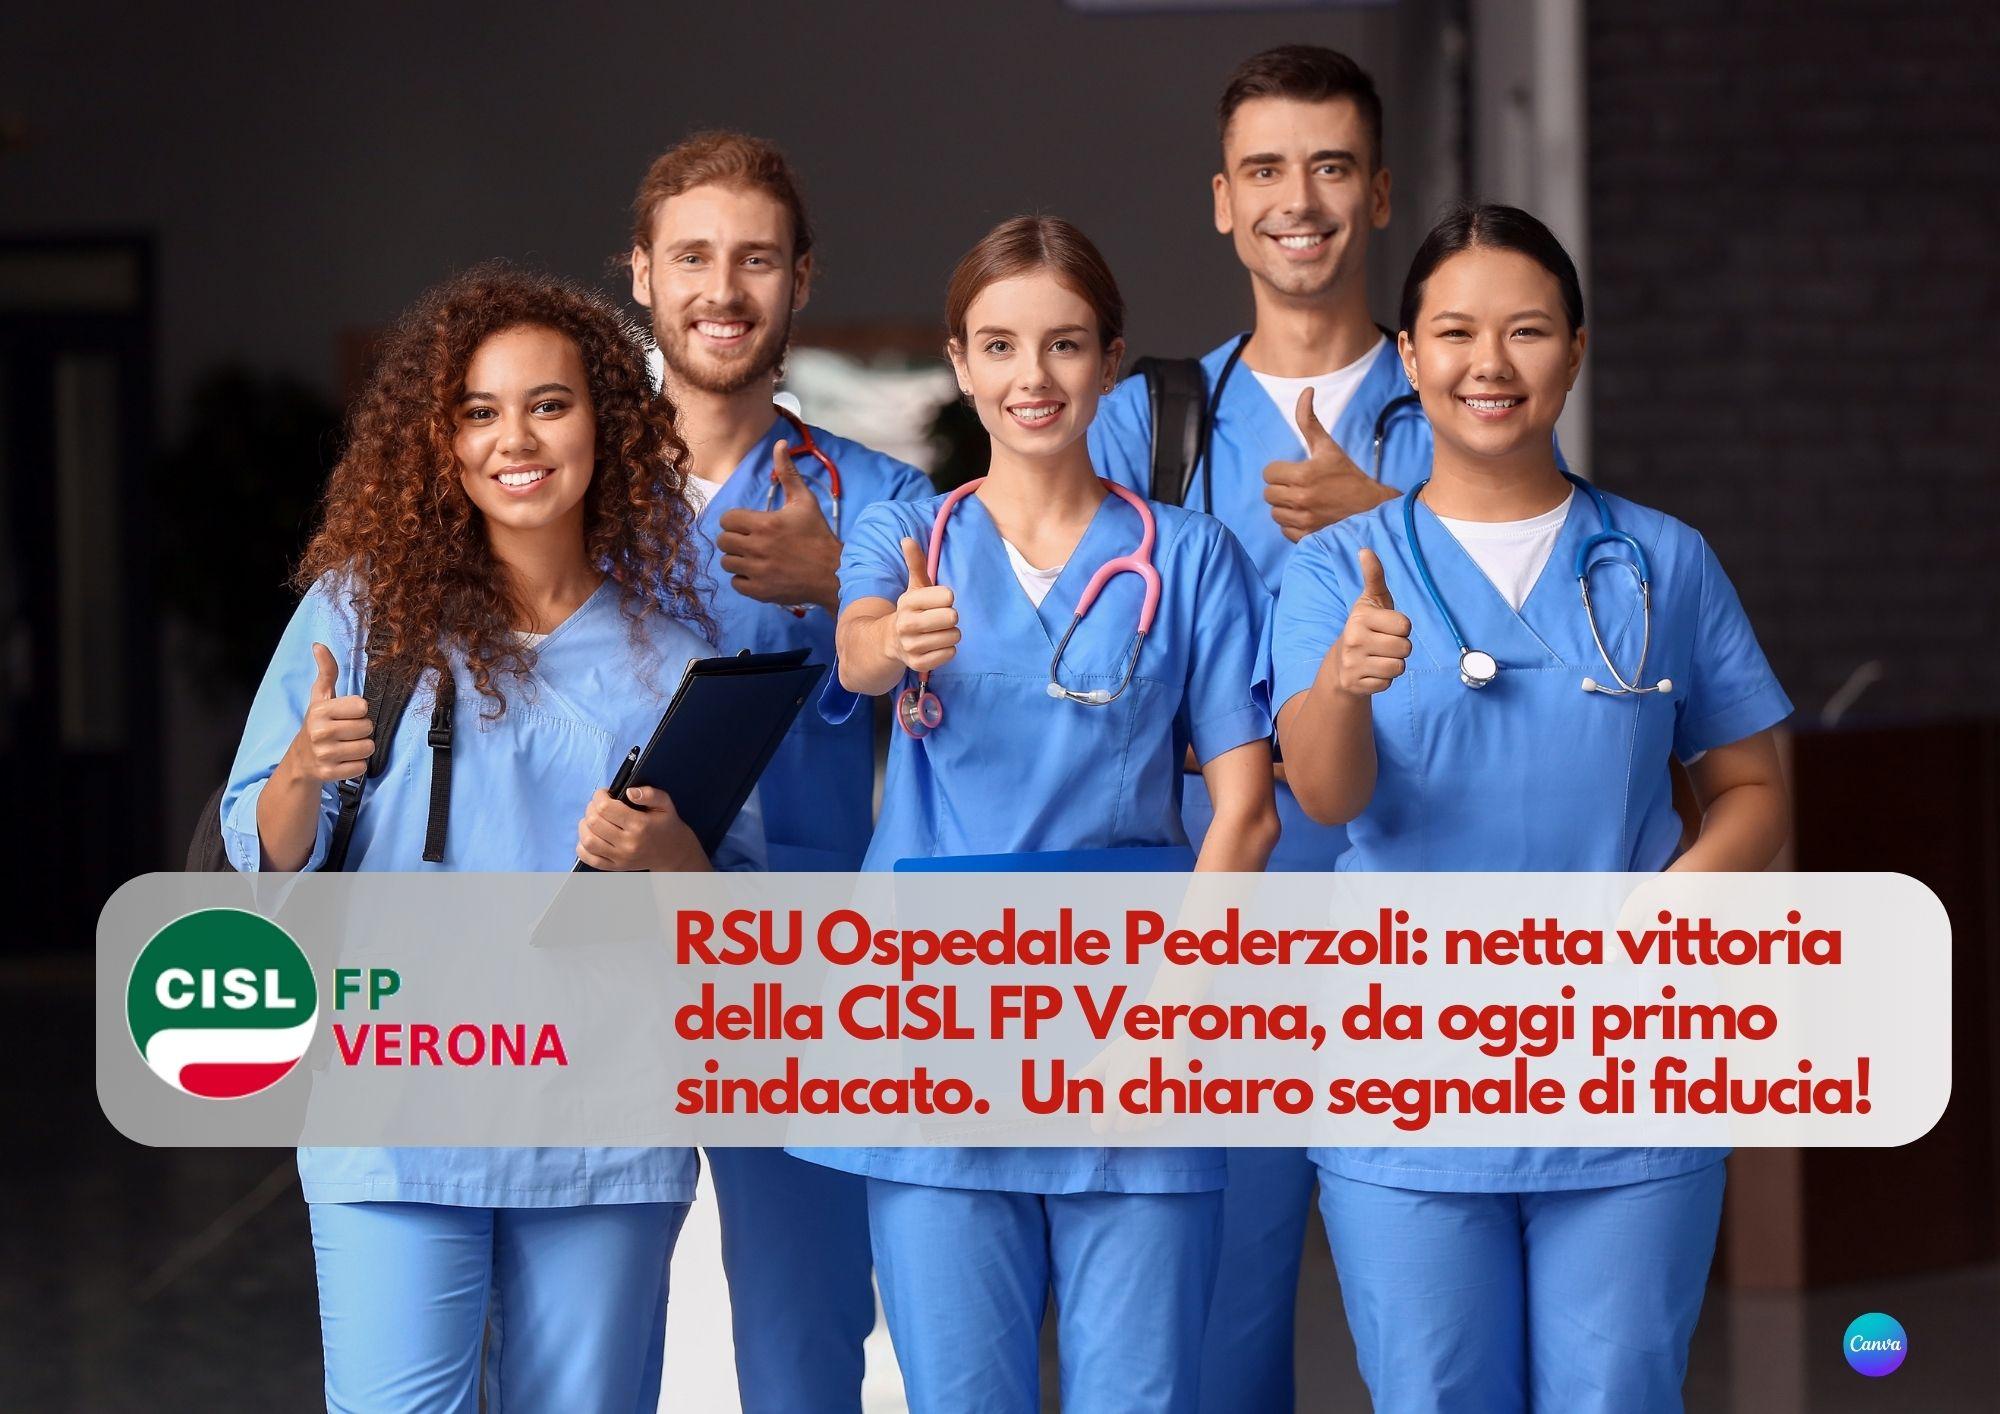 CISL FP Verona. Siamo il primo sindacato alla conta voti per RSU Ospedale Pederzoli Peschiera